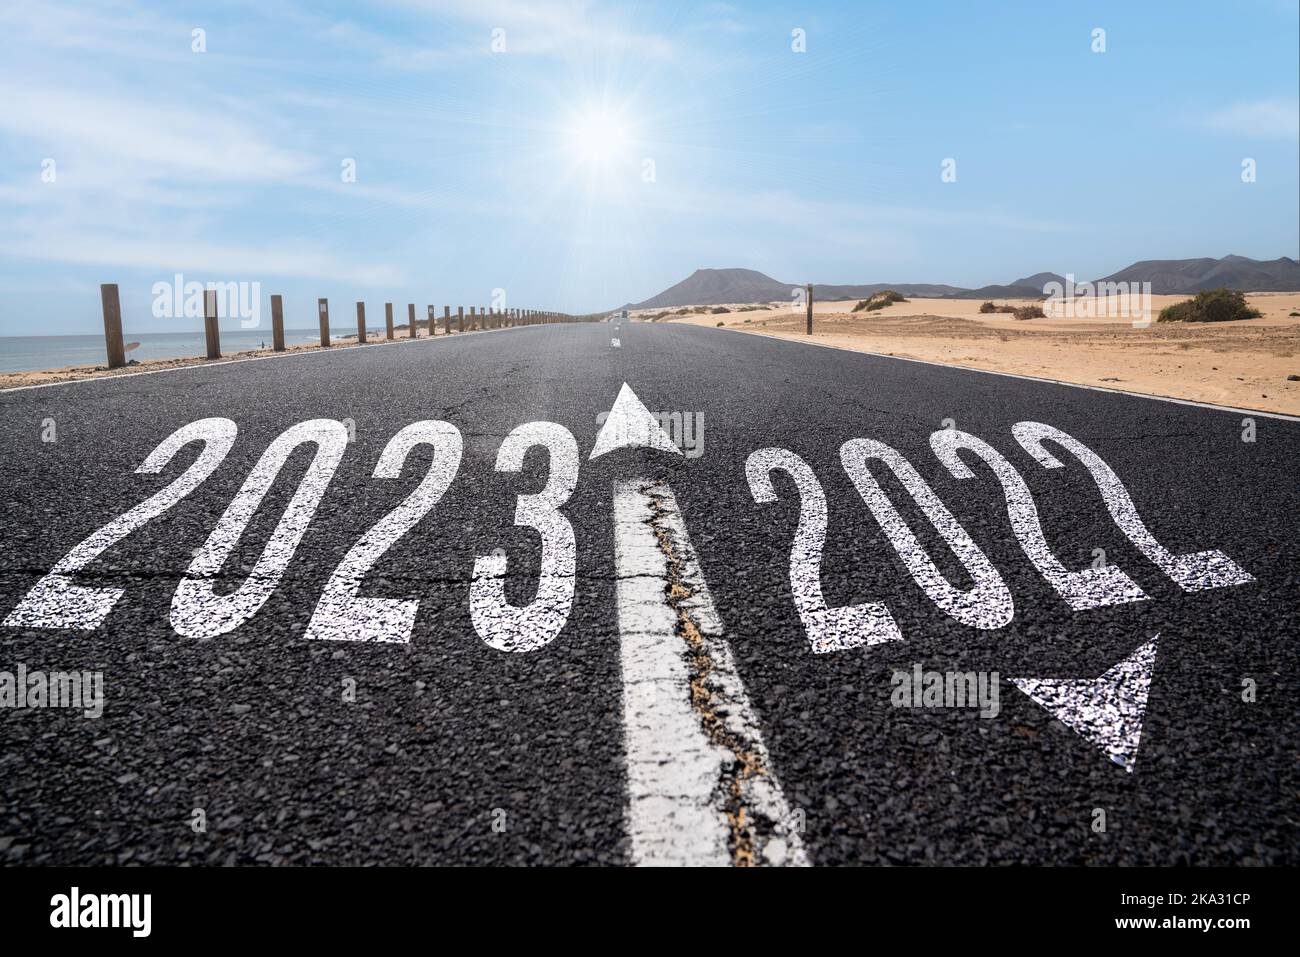 2023 Neujahrsreise und Zukunftsvision Konzept . Naturlandschaft mit Autobahnstraße, die zum glücklichen neuen Jahr führt Stockfoto